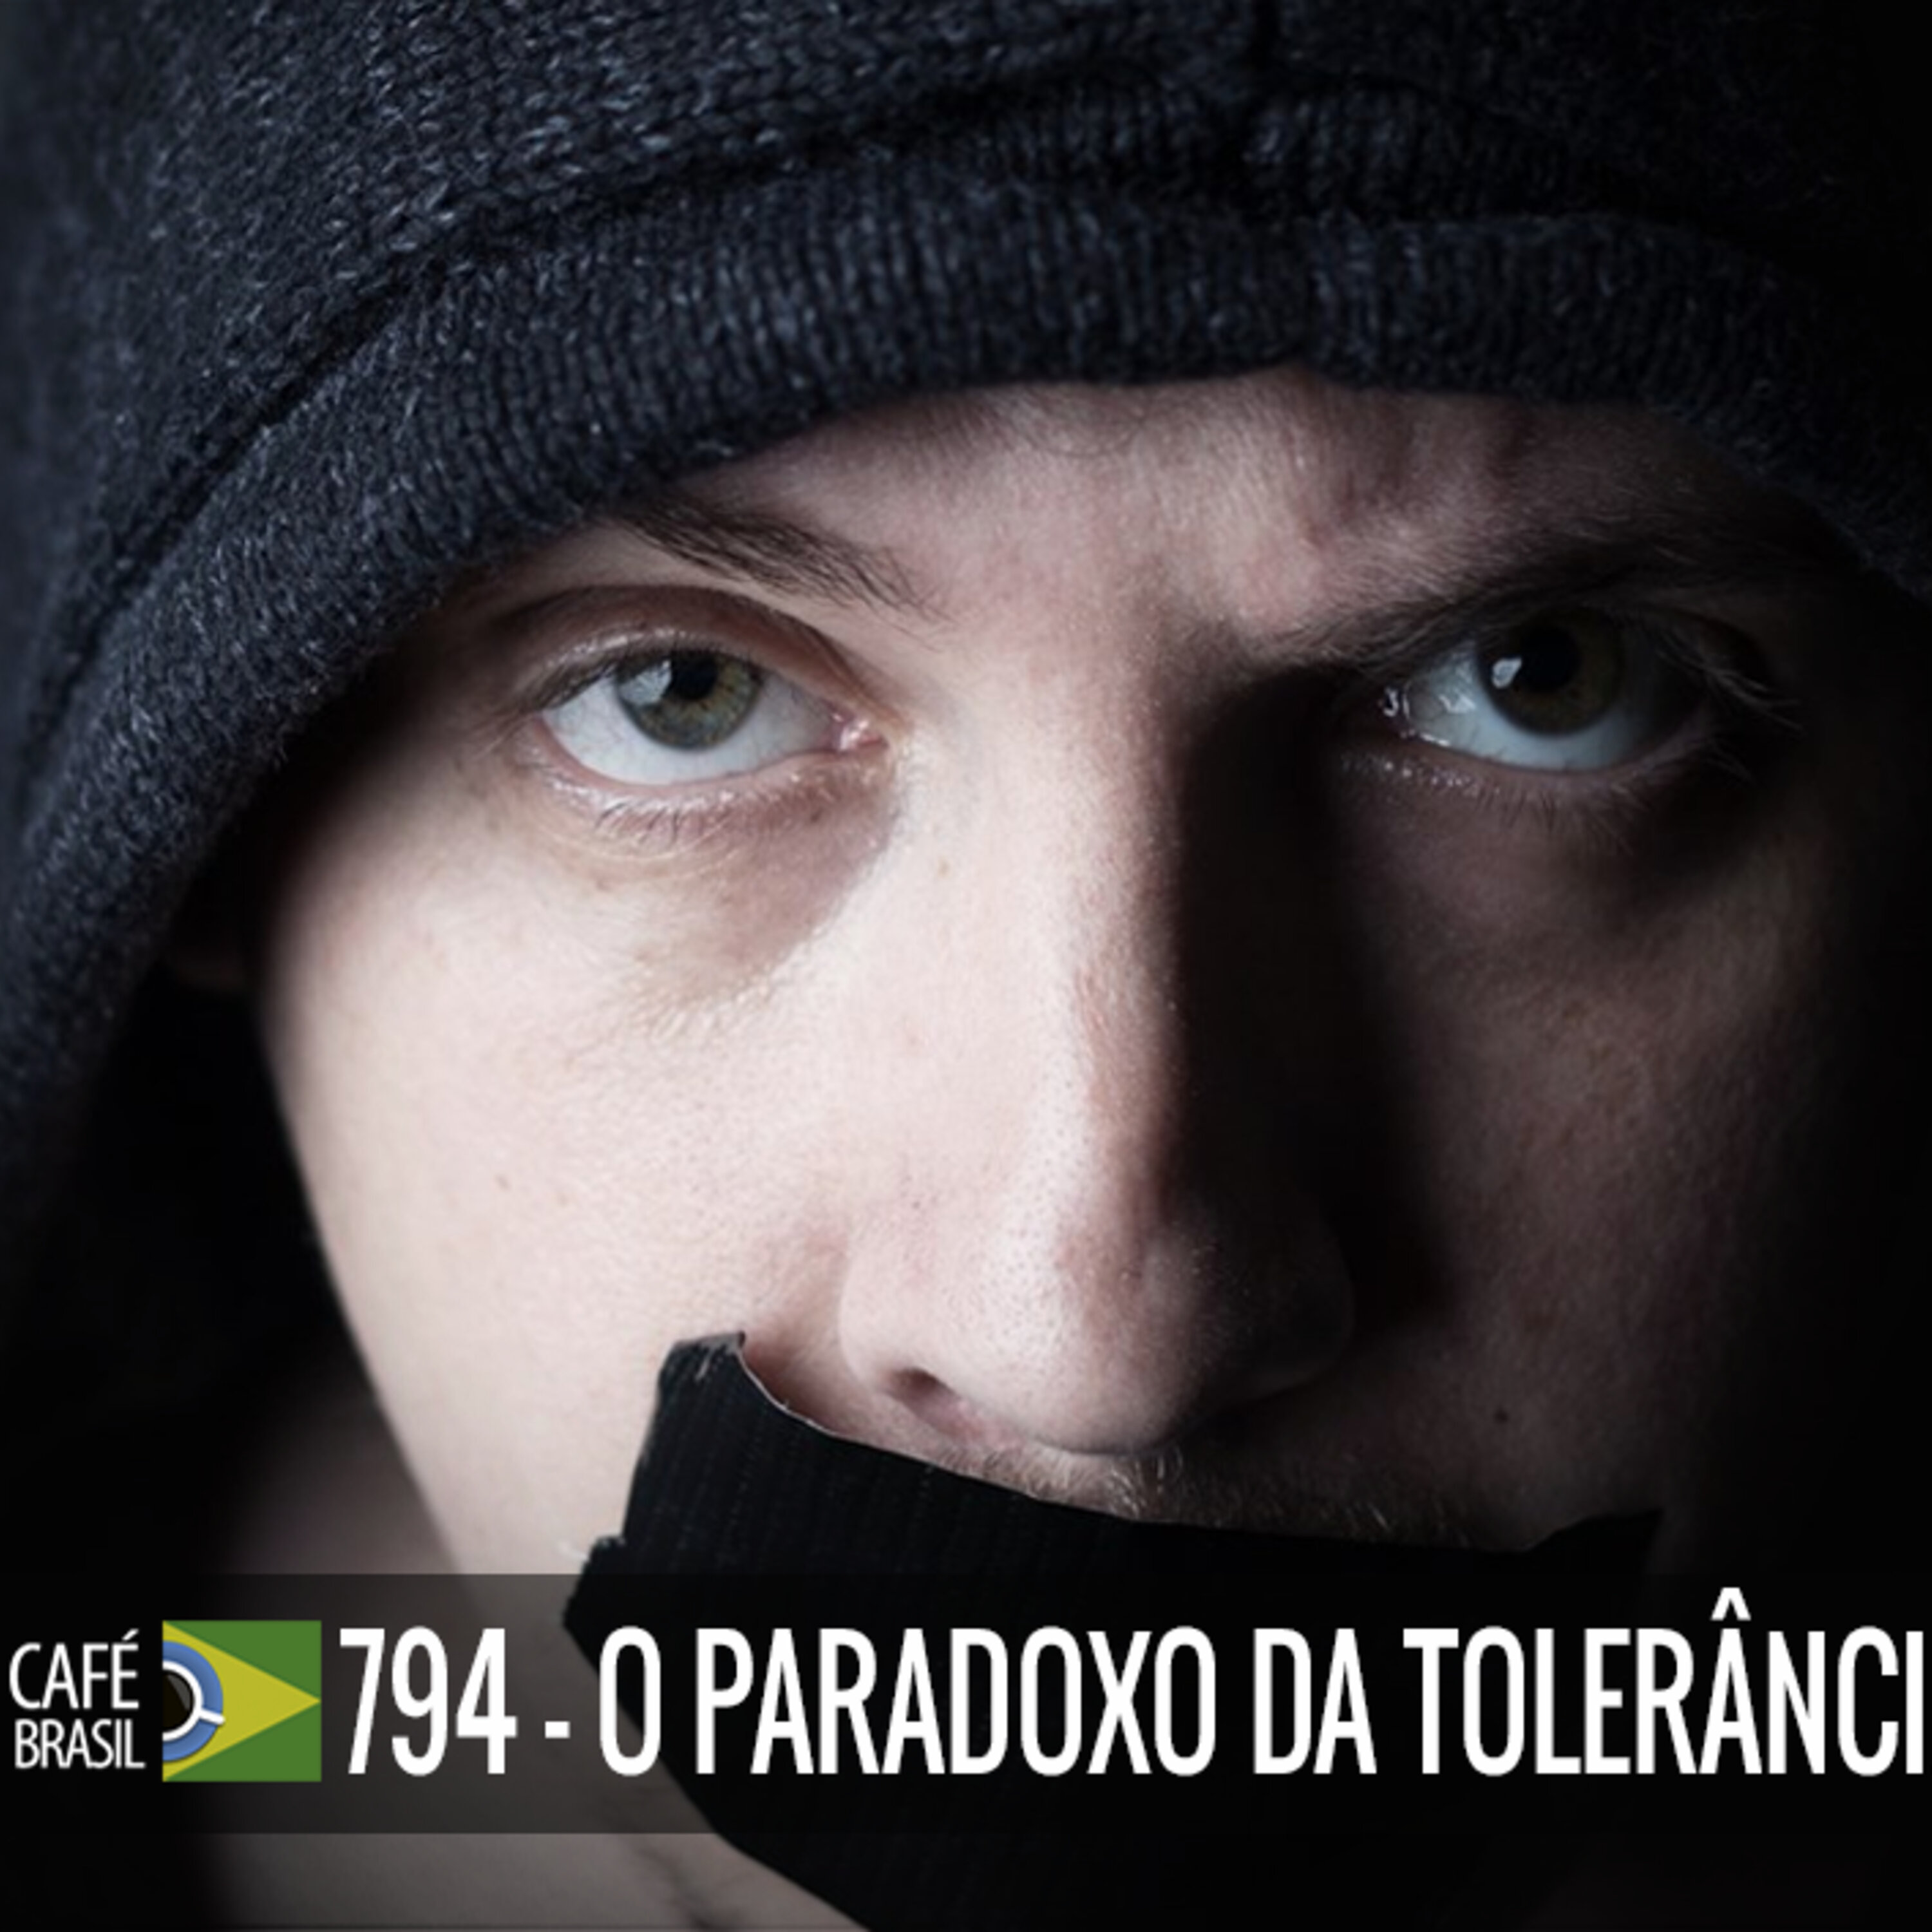 Cafe Brasil 794 - O paradoxo da tolerancia